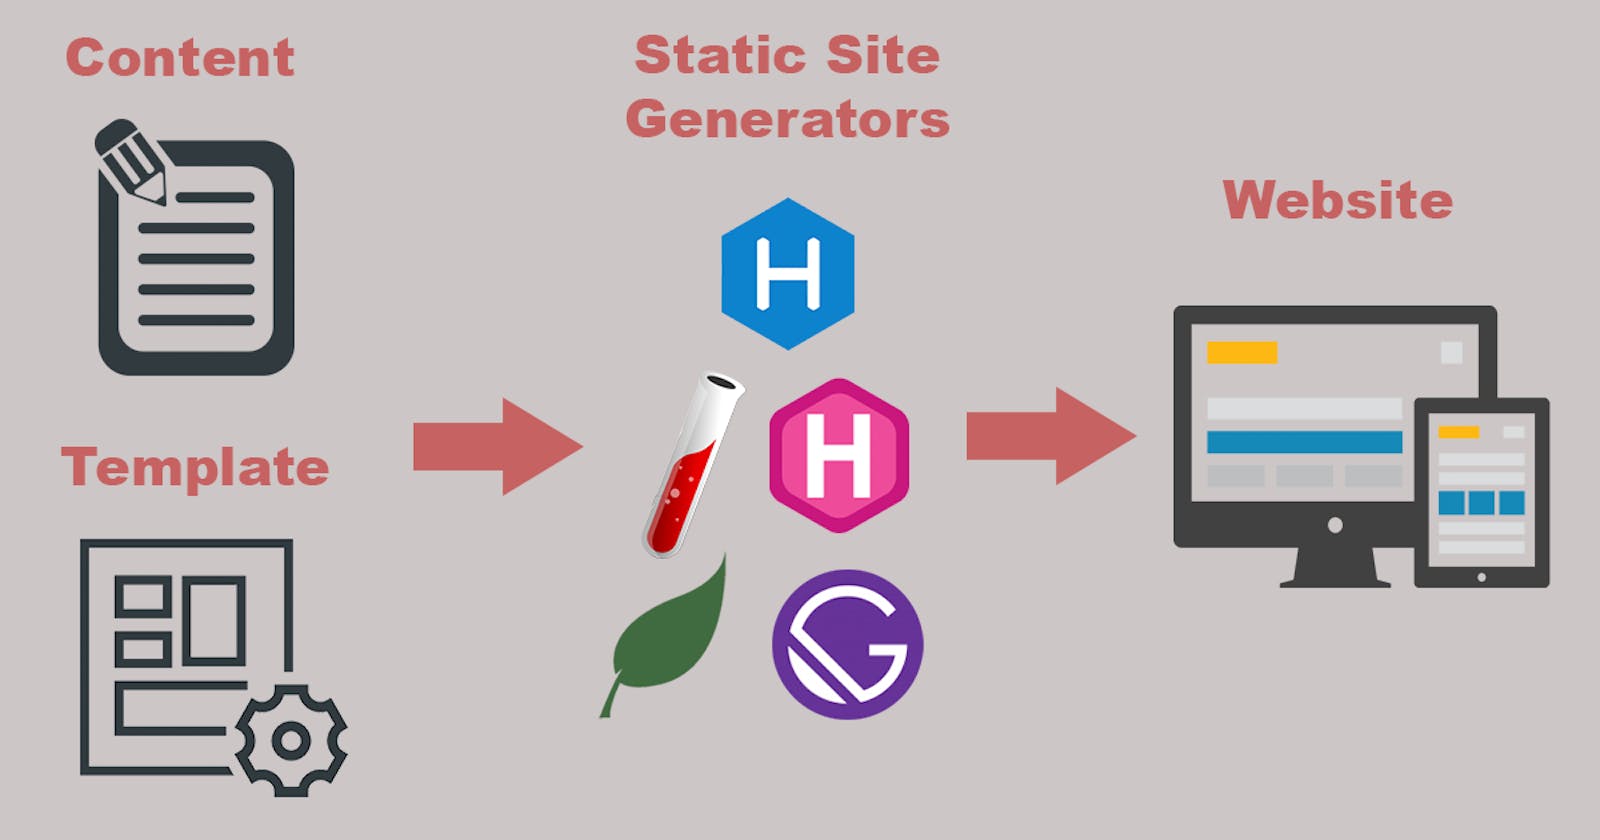 Static Site Generators: A Comparison